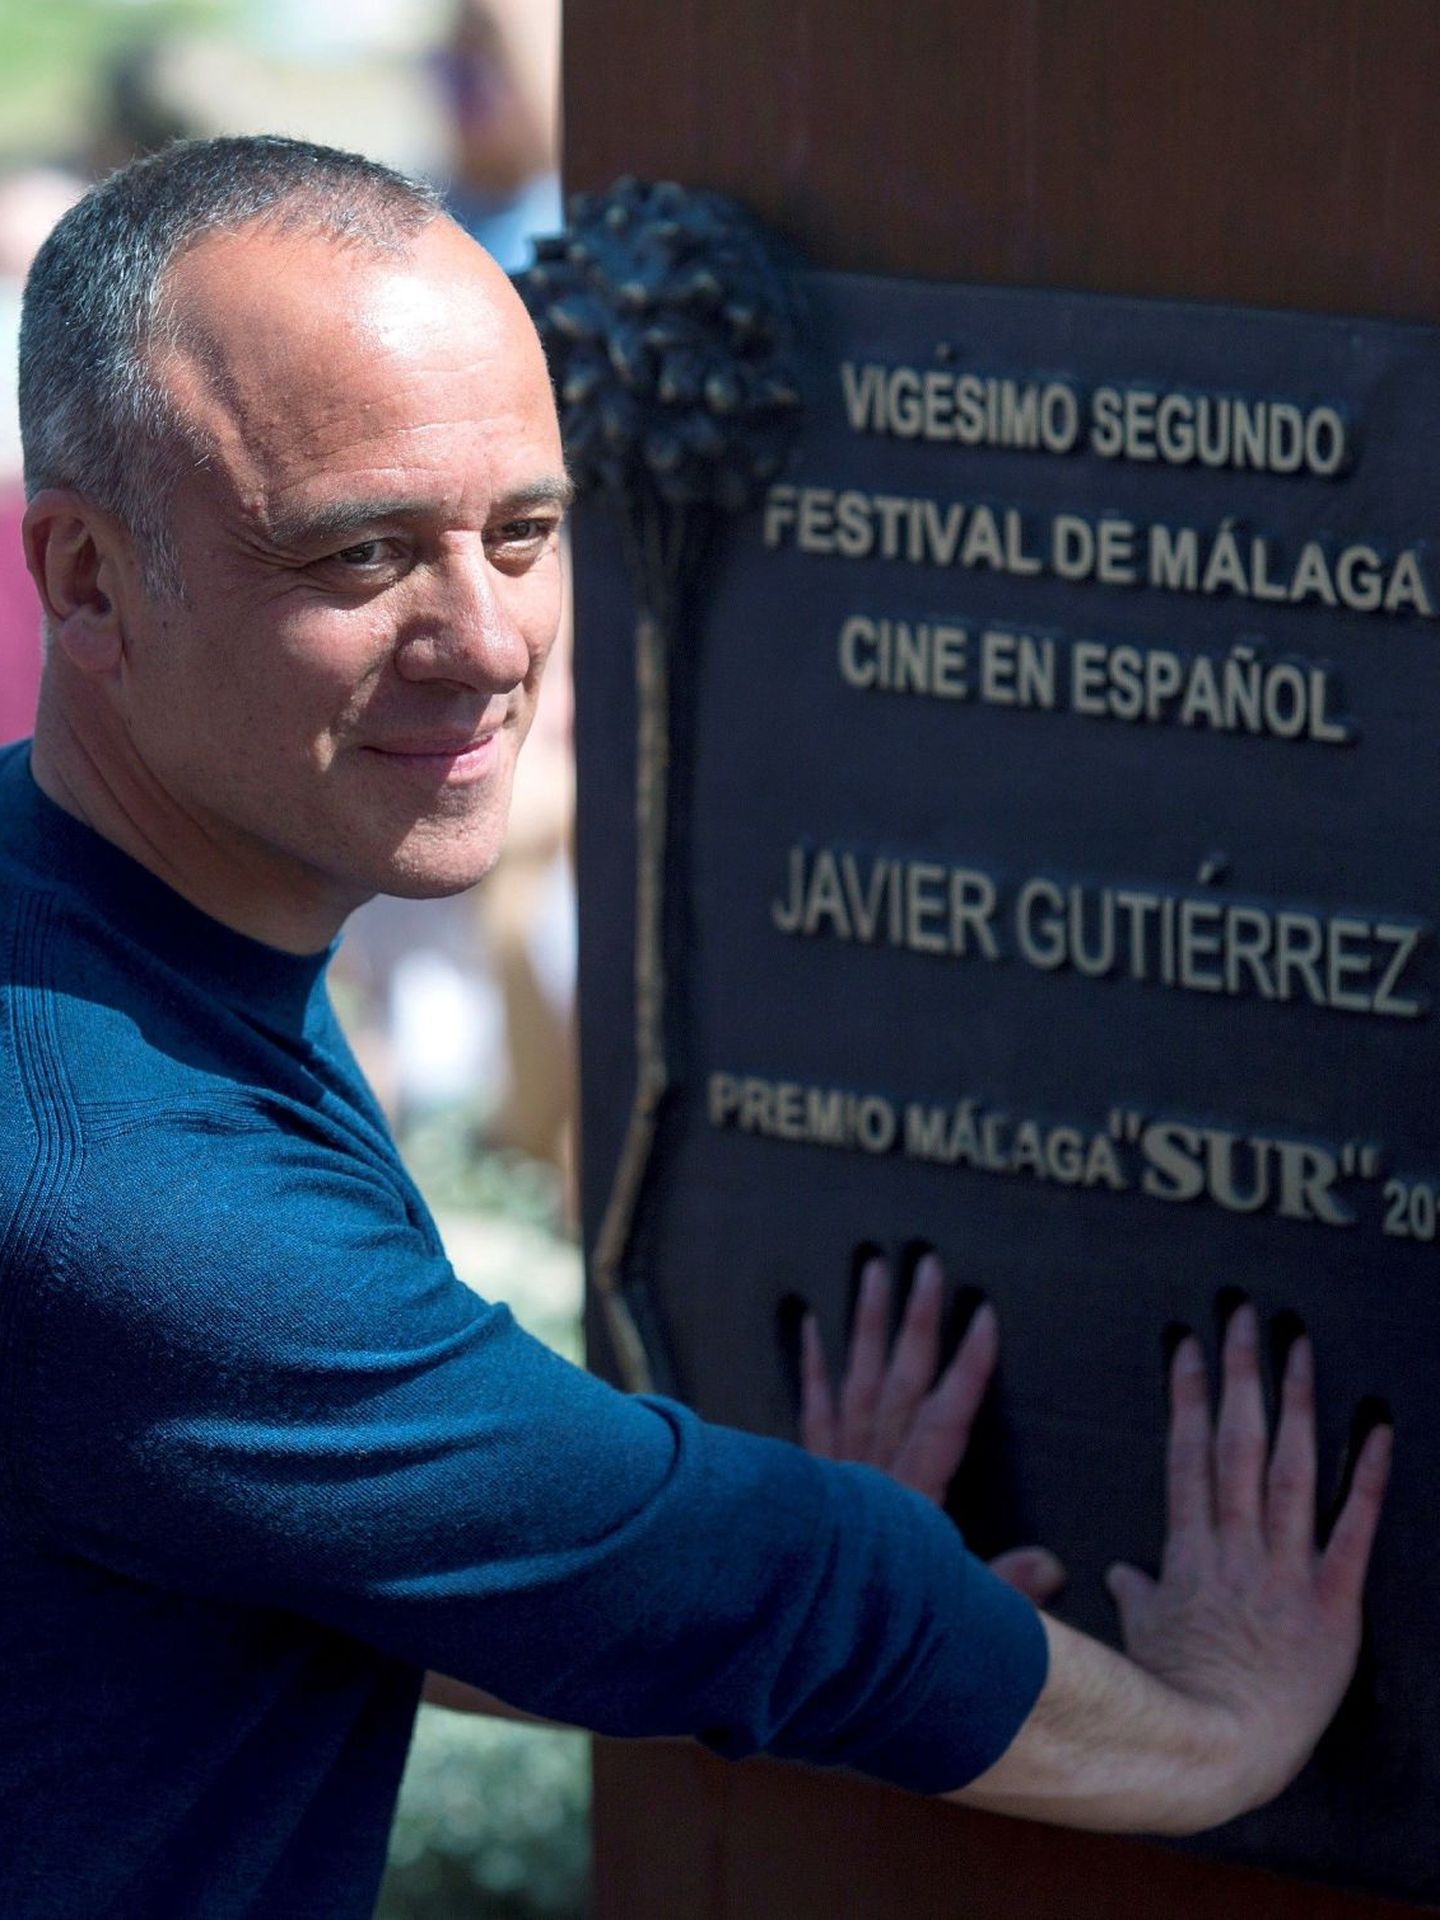 Javier Gutiérrez descubre el monolito Premio Málaga-SUR dedicado en su honor, dentro del Festival de Málaga Cine en Español. (EFE)